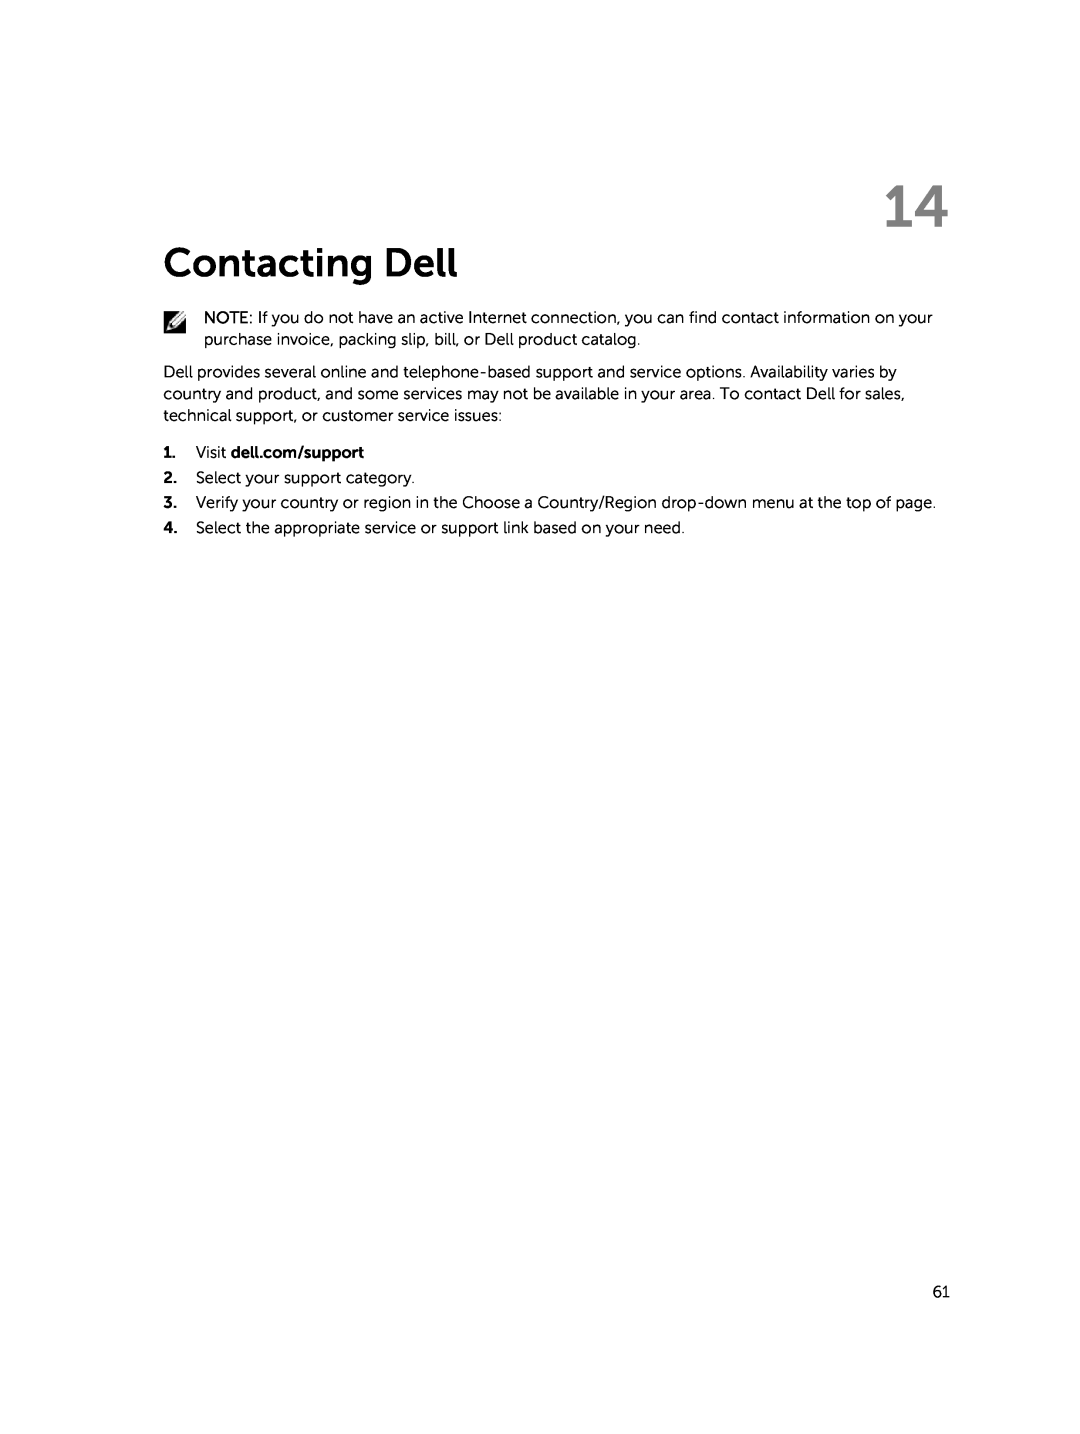 Dell PRO11I6363BLK, T07G manual Contacting Dell 